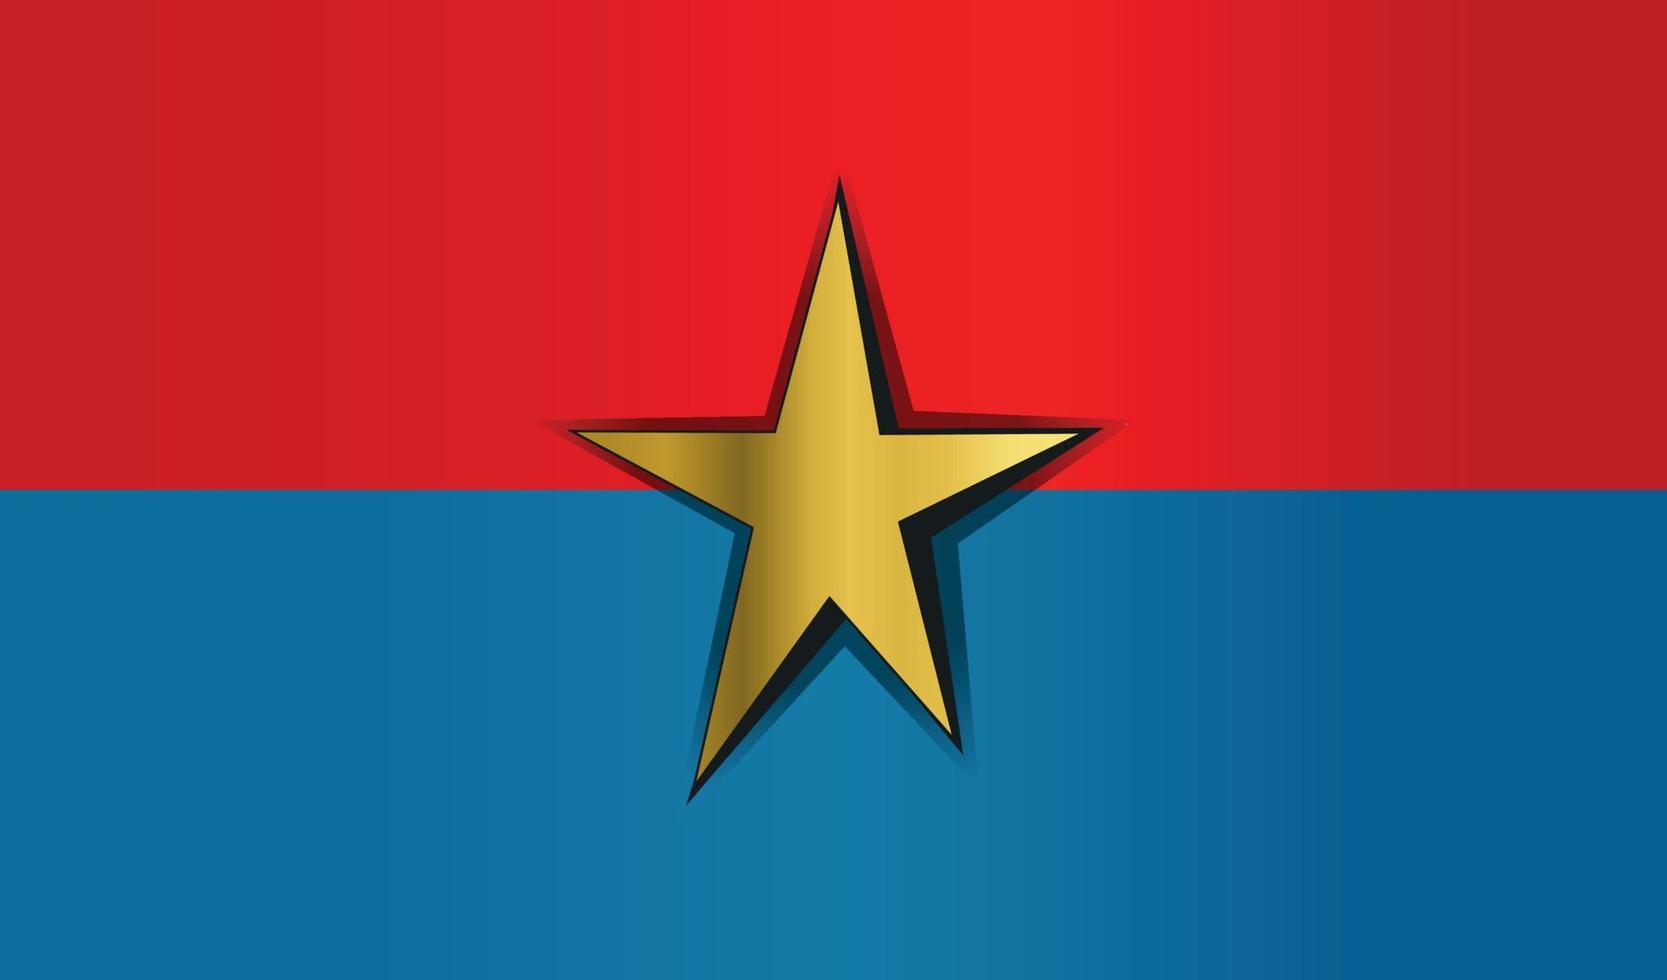 símbolo de la bandera comunista del vietcong vector de gradiente dorado